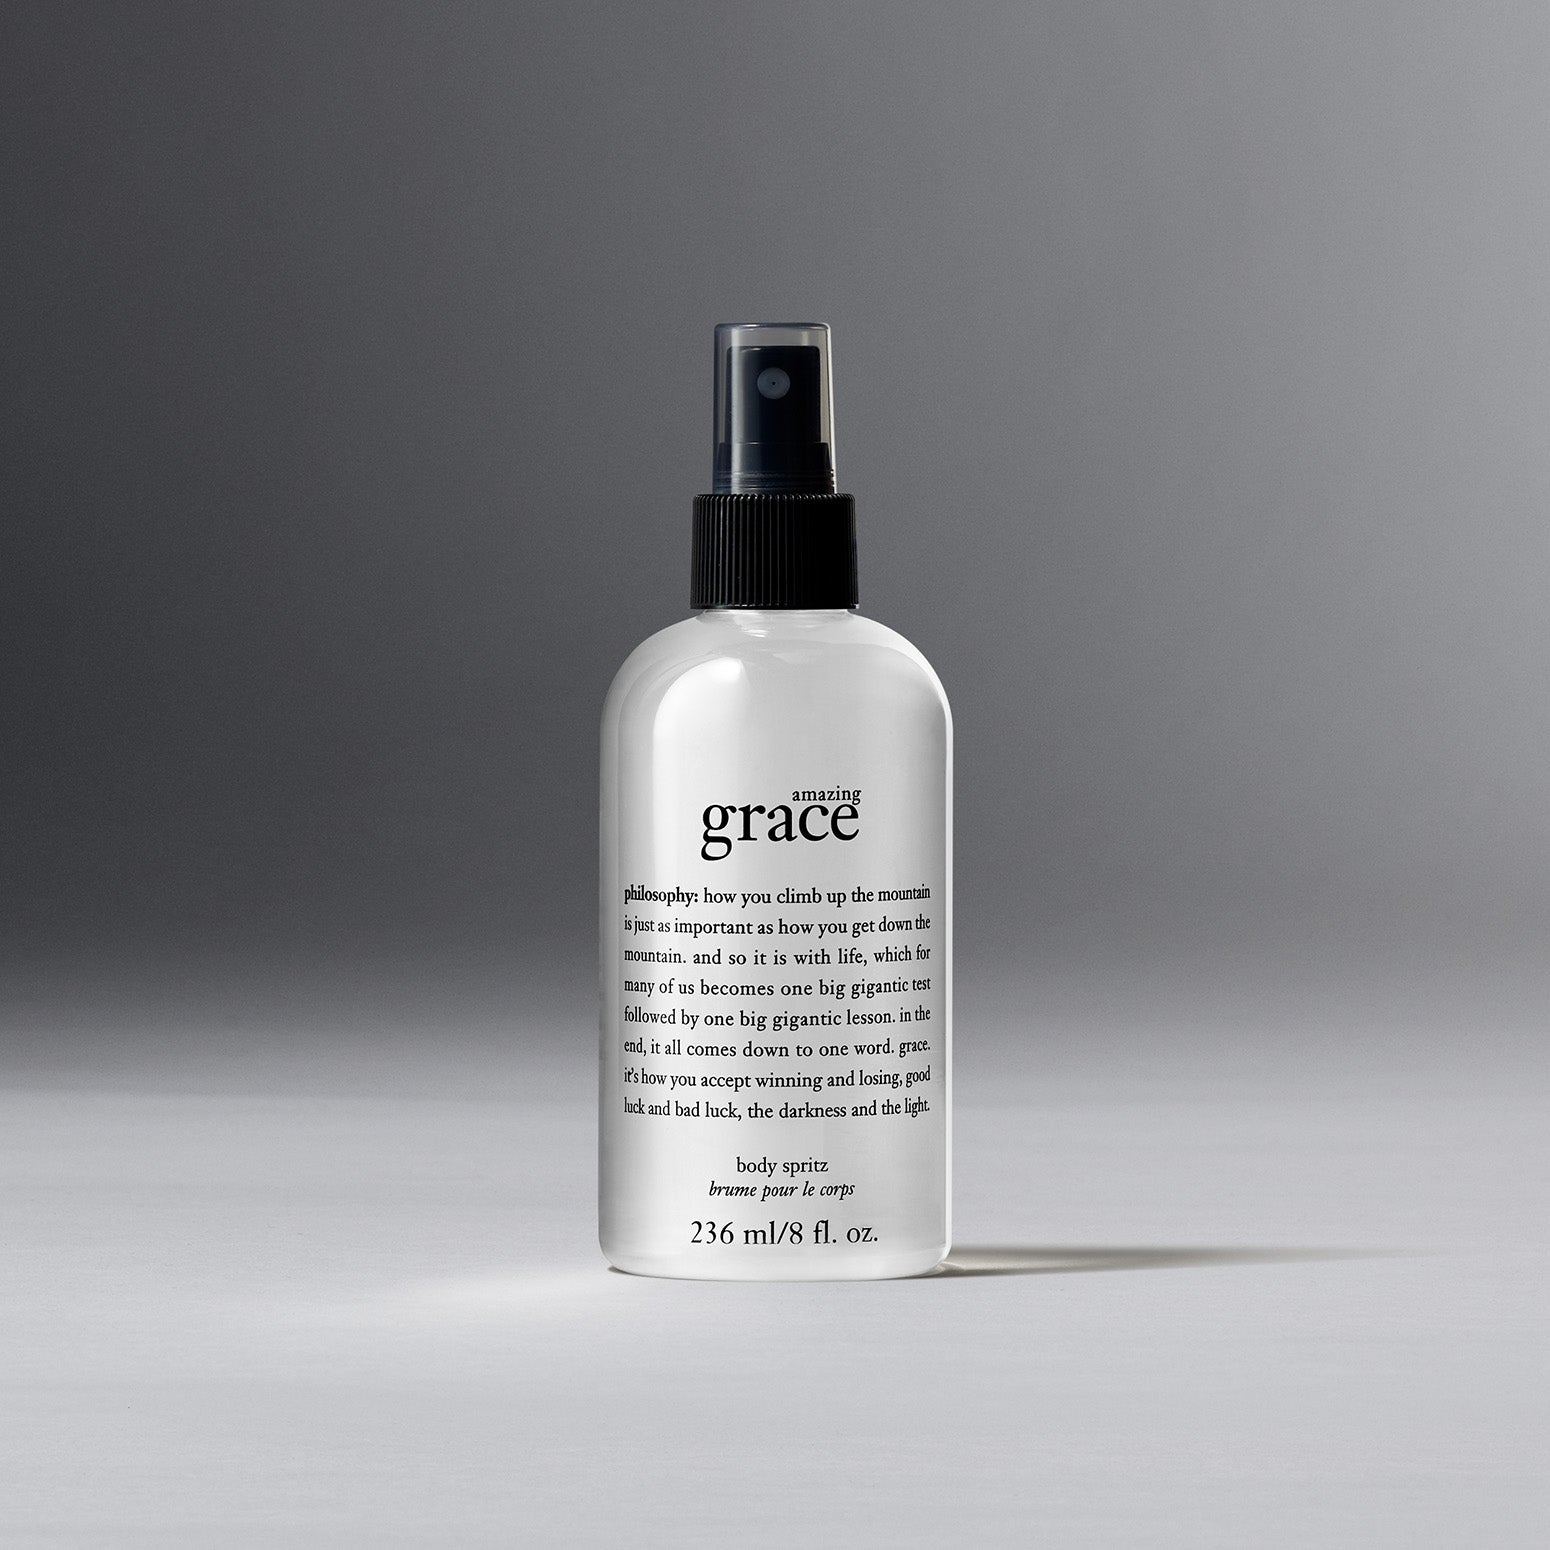 Philosophy Pure Grace 0.5 oz Eau de Toilette Spray